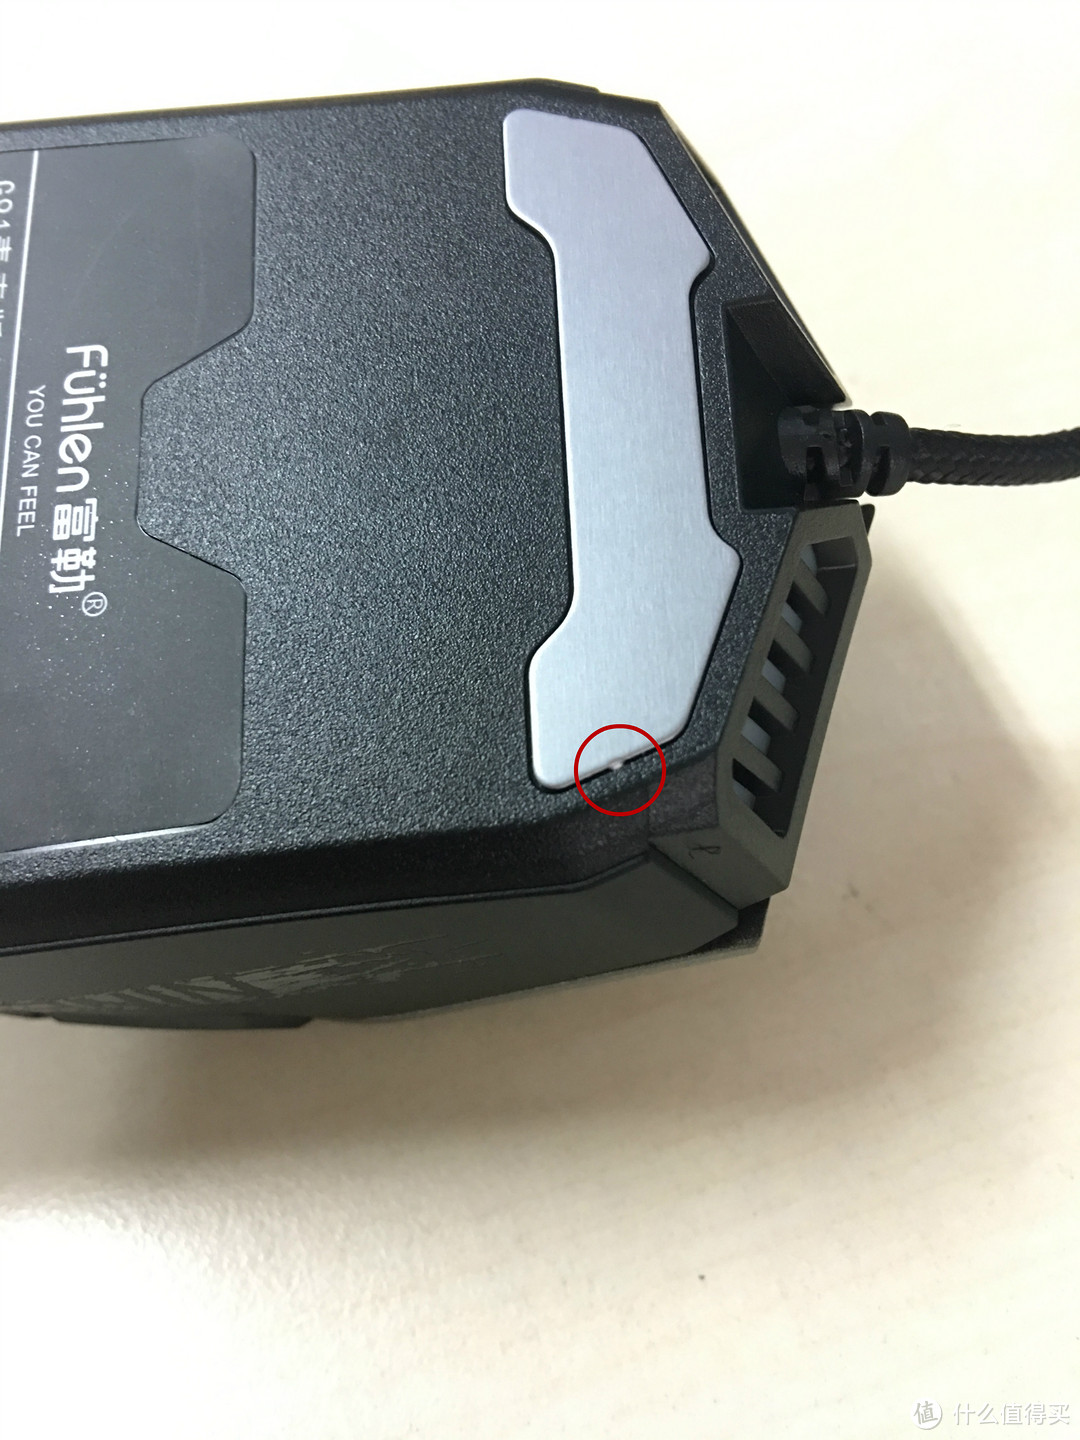 【轻众测】富勒 G91 青春版游戏鼠标评测报告